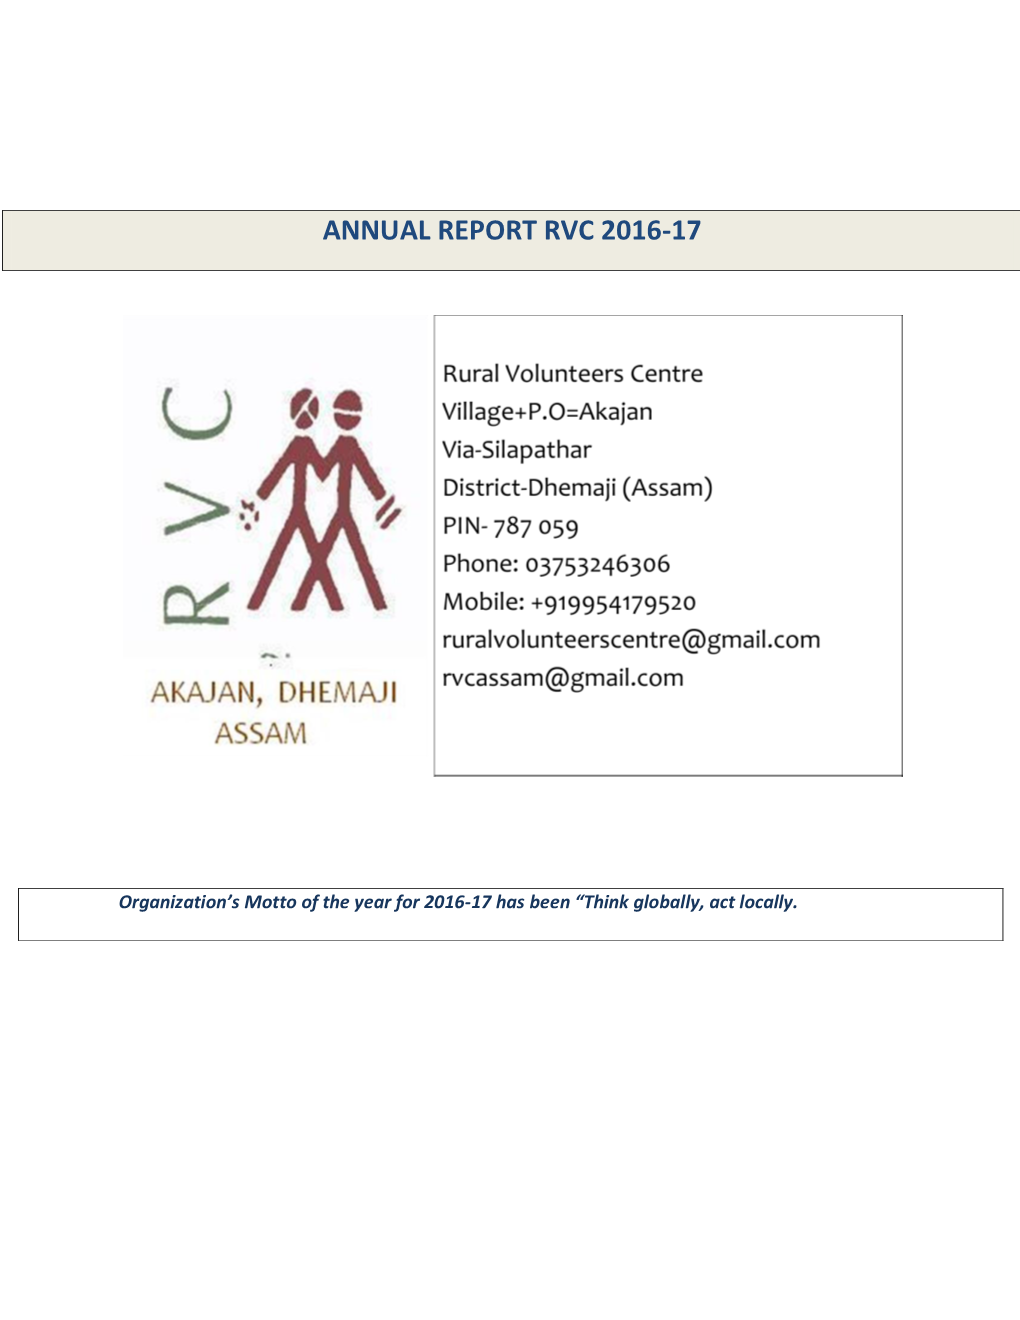 Annual Report Rvc 2016-17